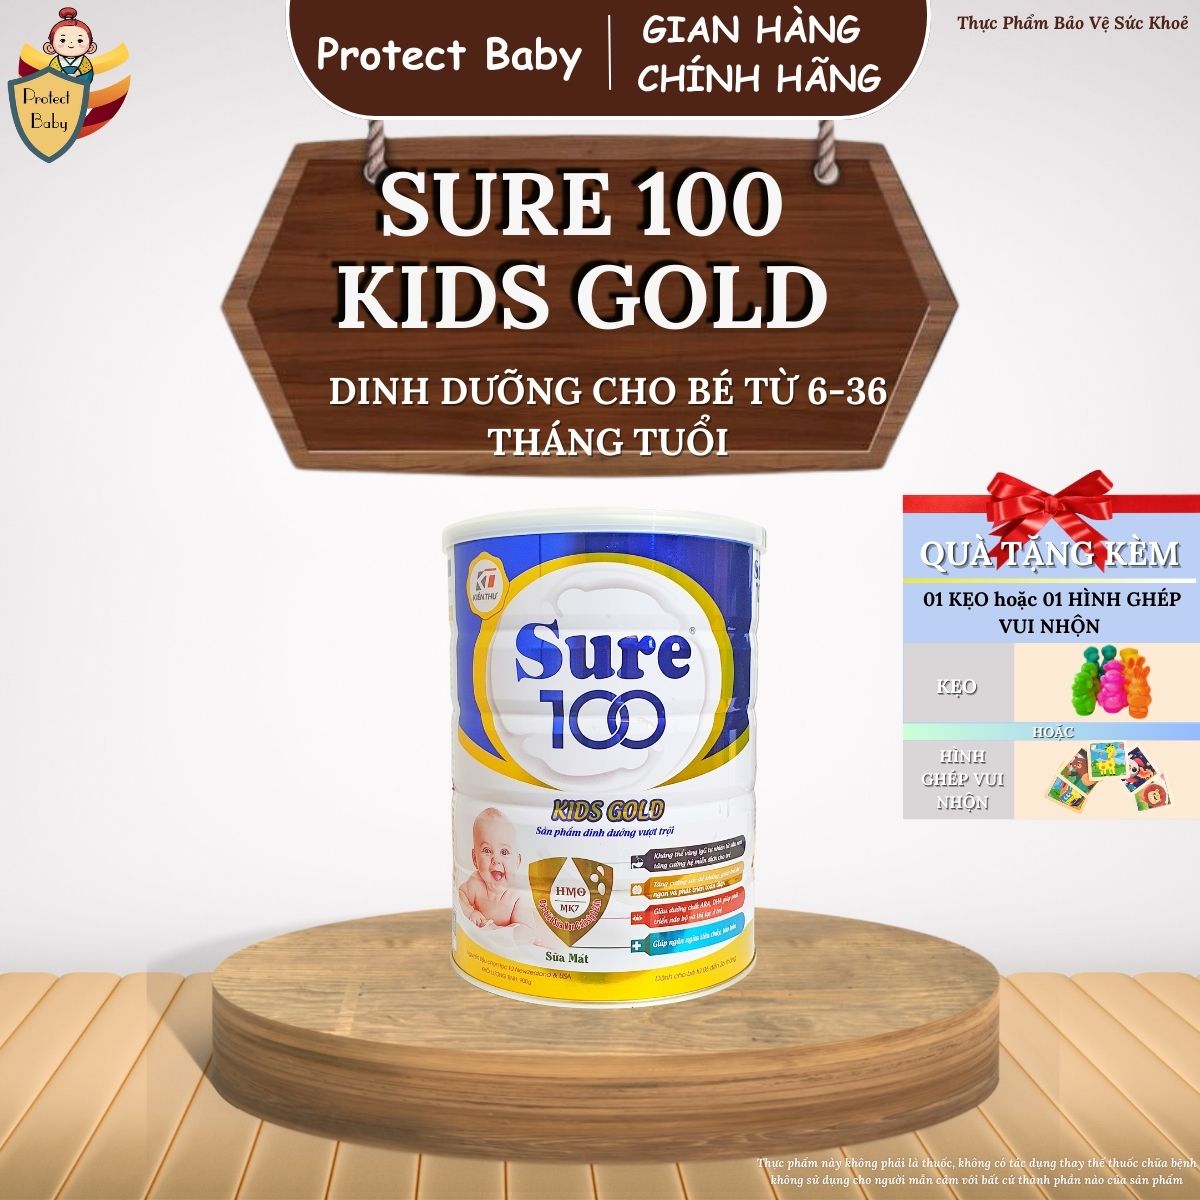 Sữa Sure 100 Kid Gold 900g